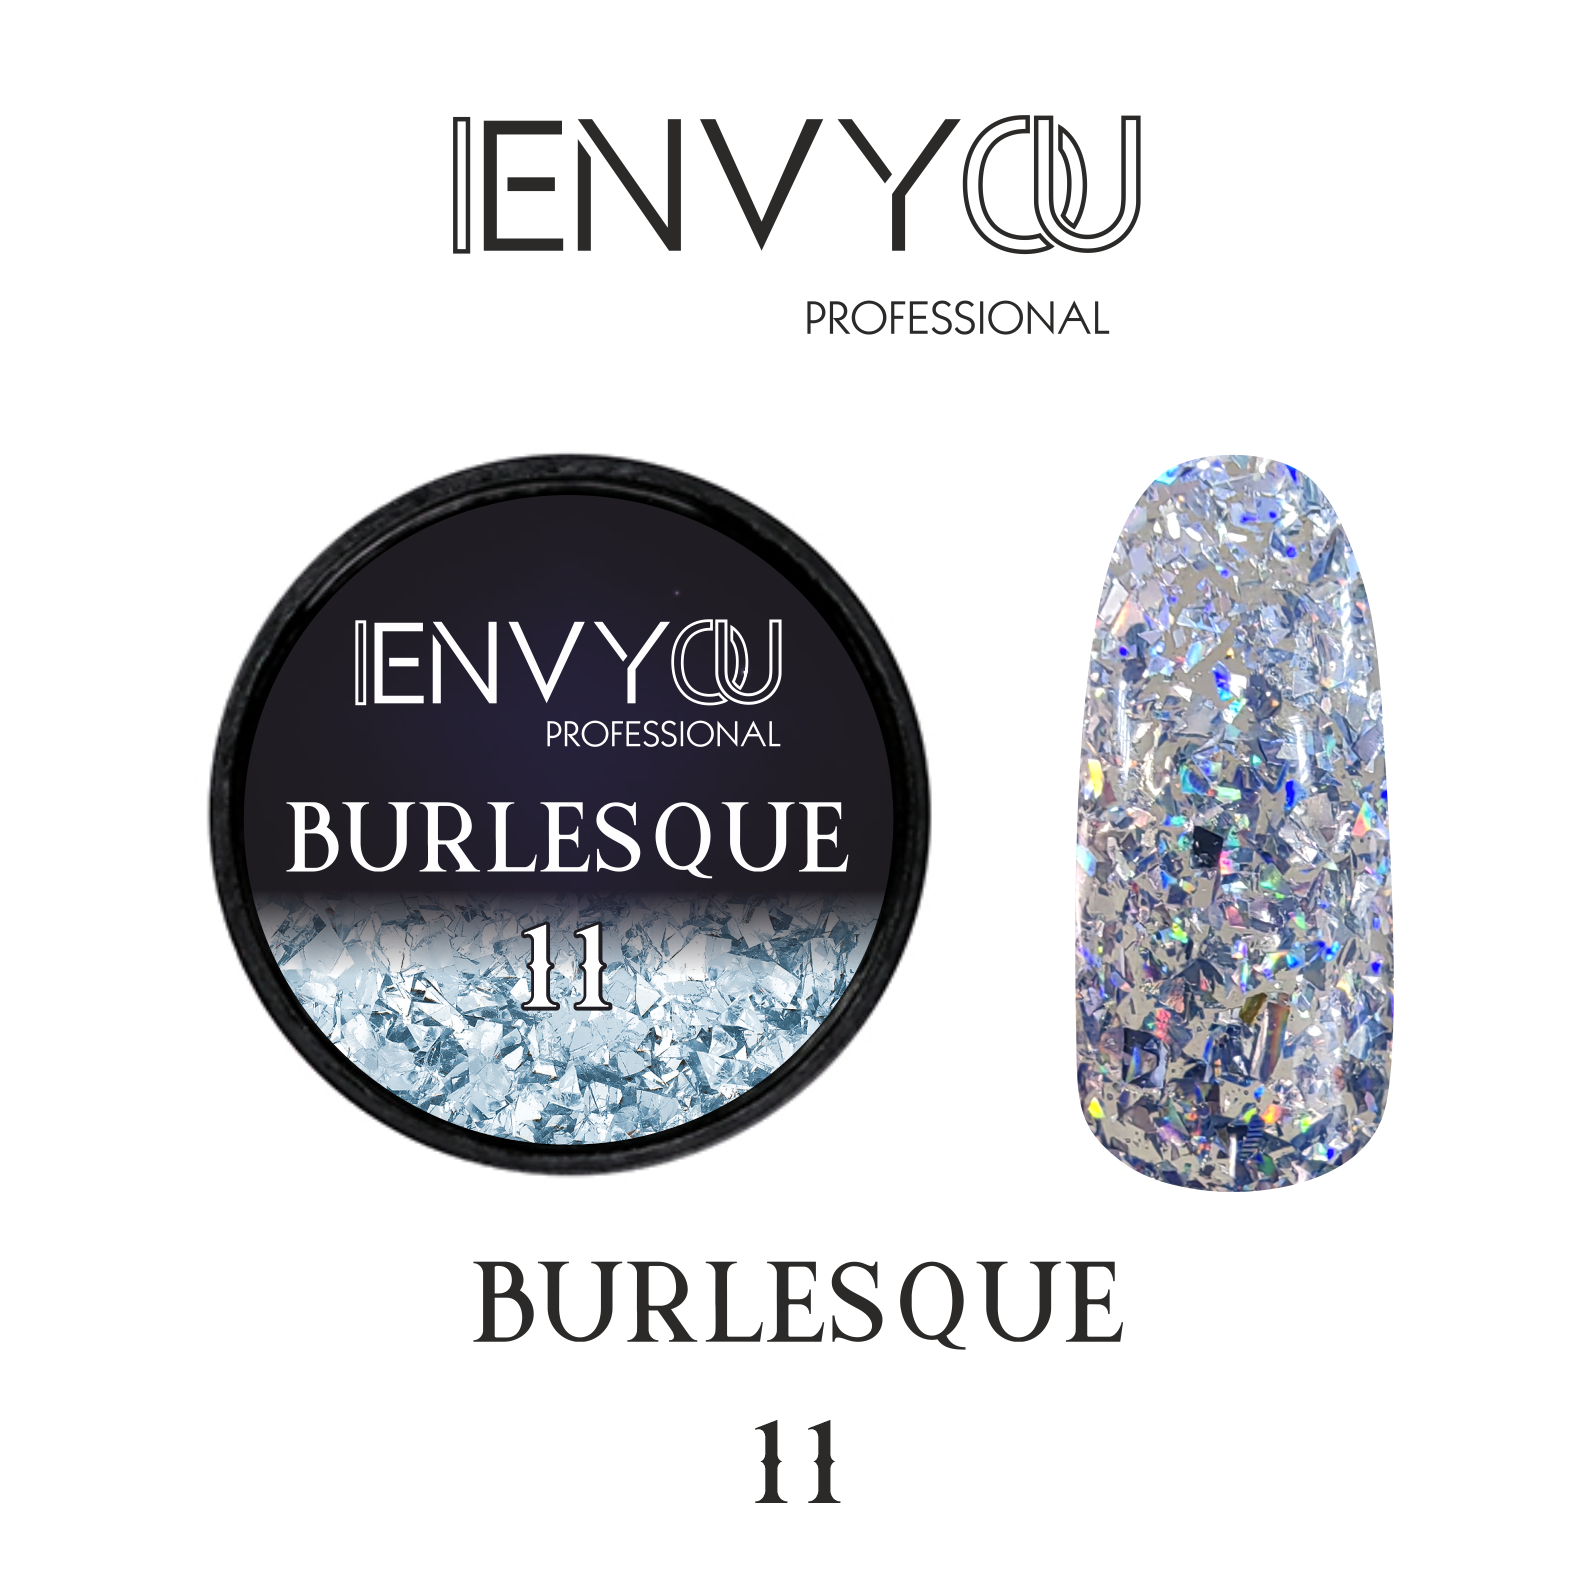 ENVY Burlesque 11 6g